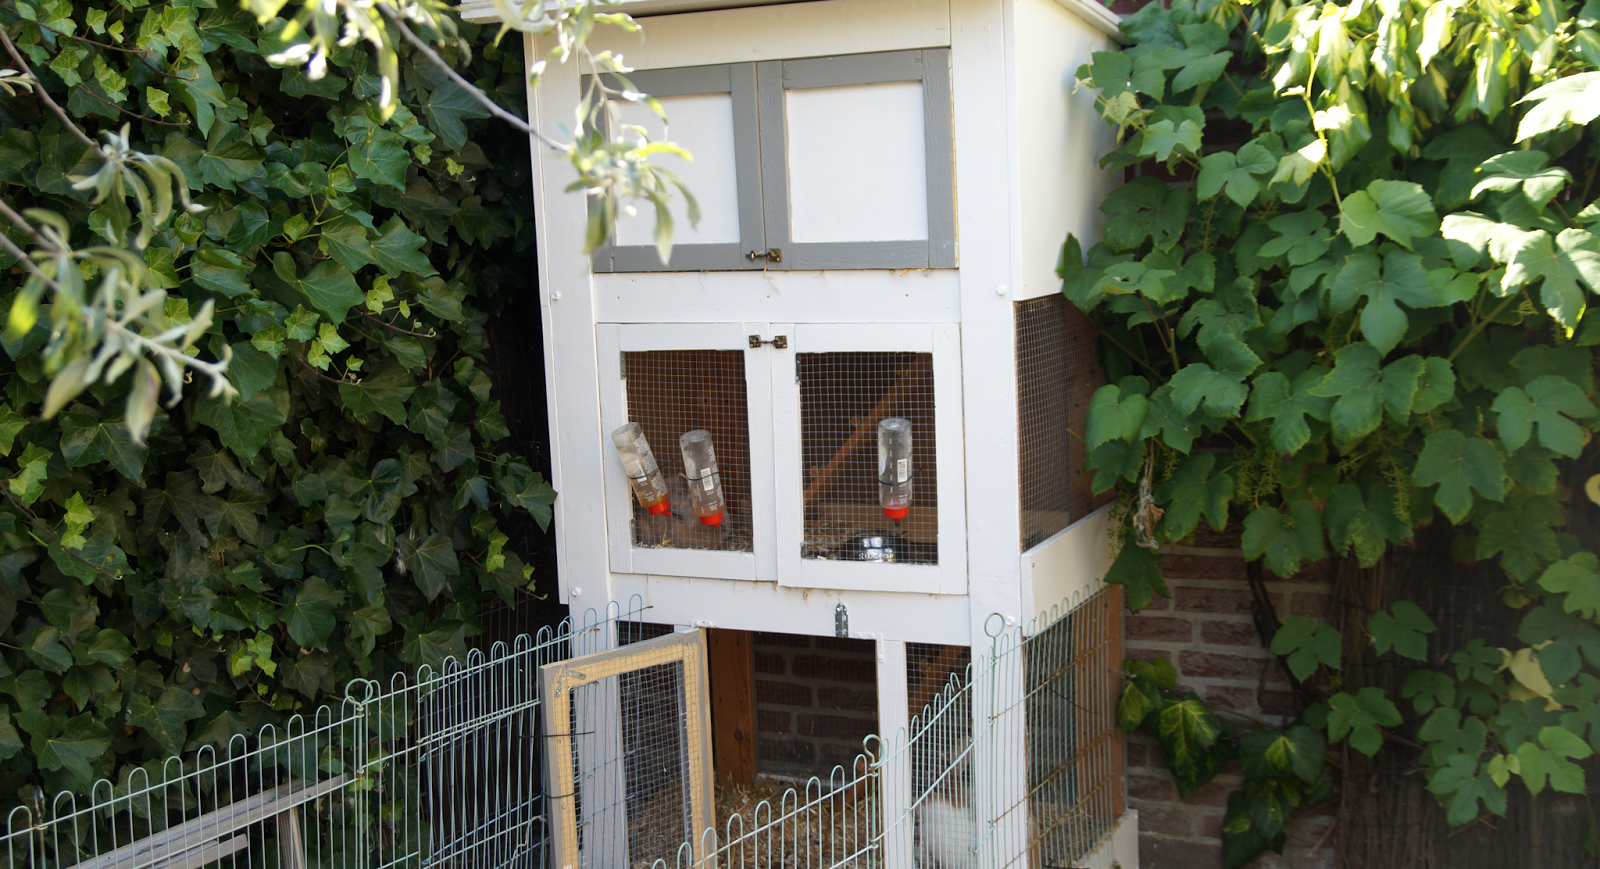 Kwijtschelding Afwezigheid Nodig hebben PiinkBeautyPrincess: De nieuwe konijnen villa/flat met drie verdiepingen ♡